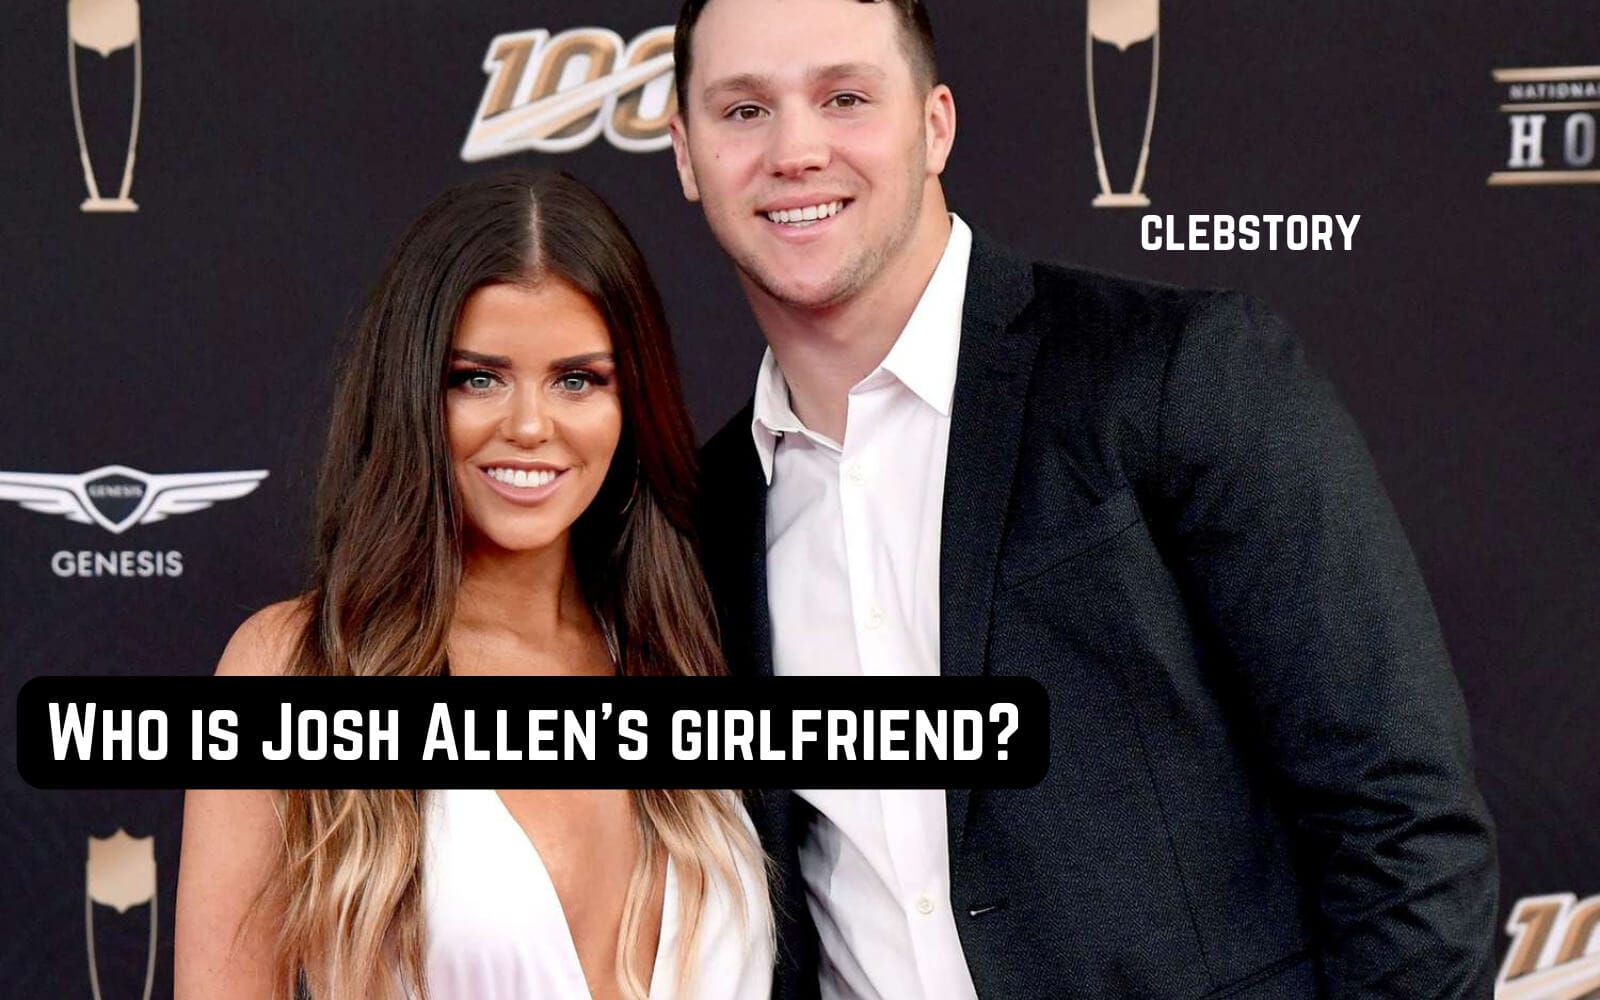 Who is Josh Allen's girlfriend